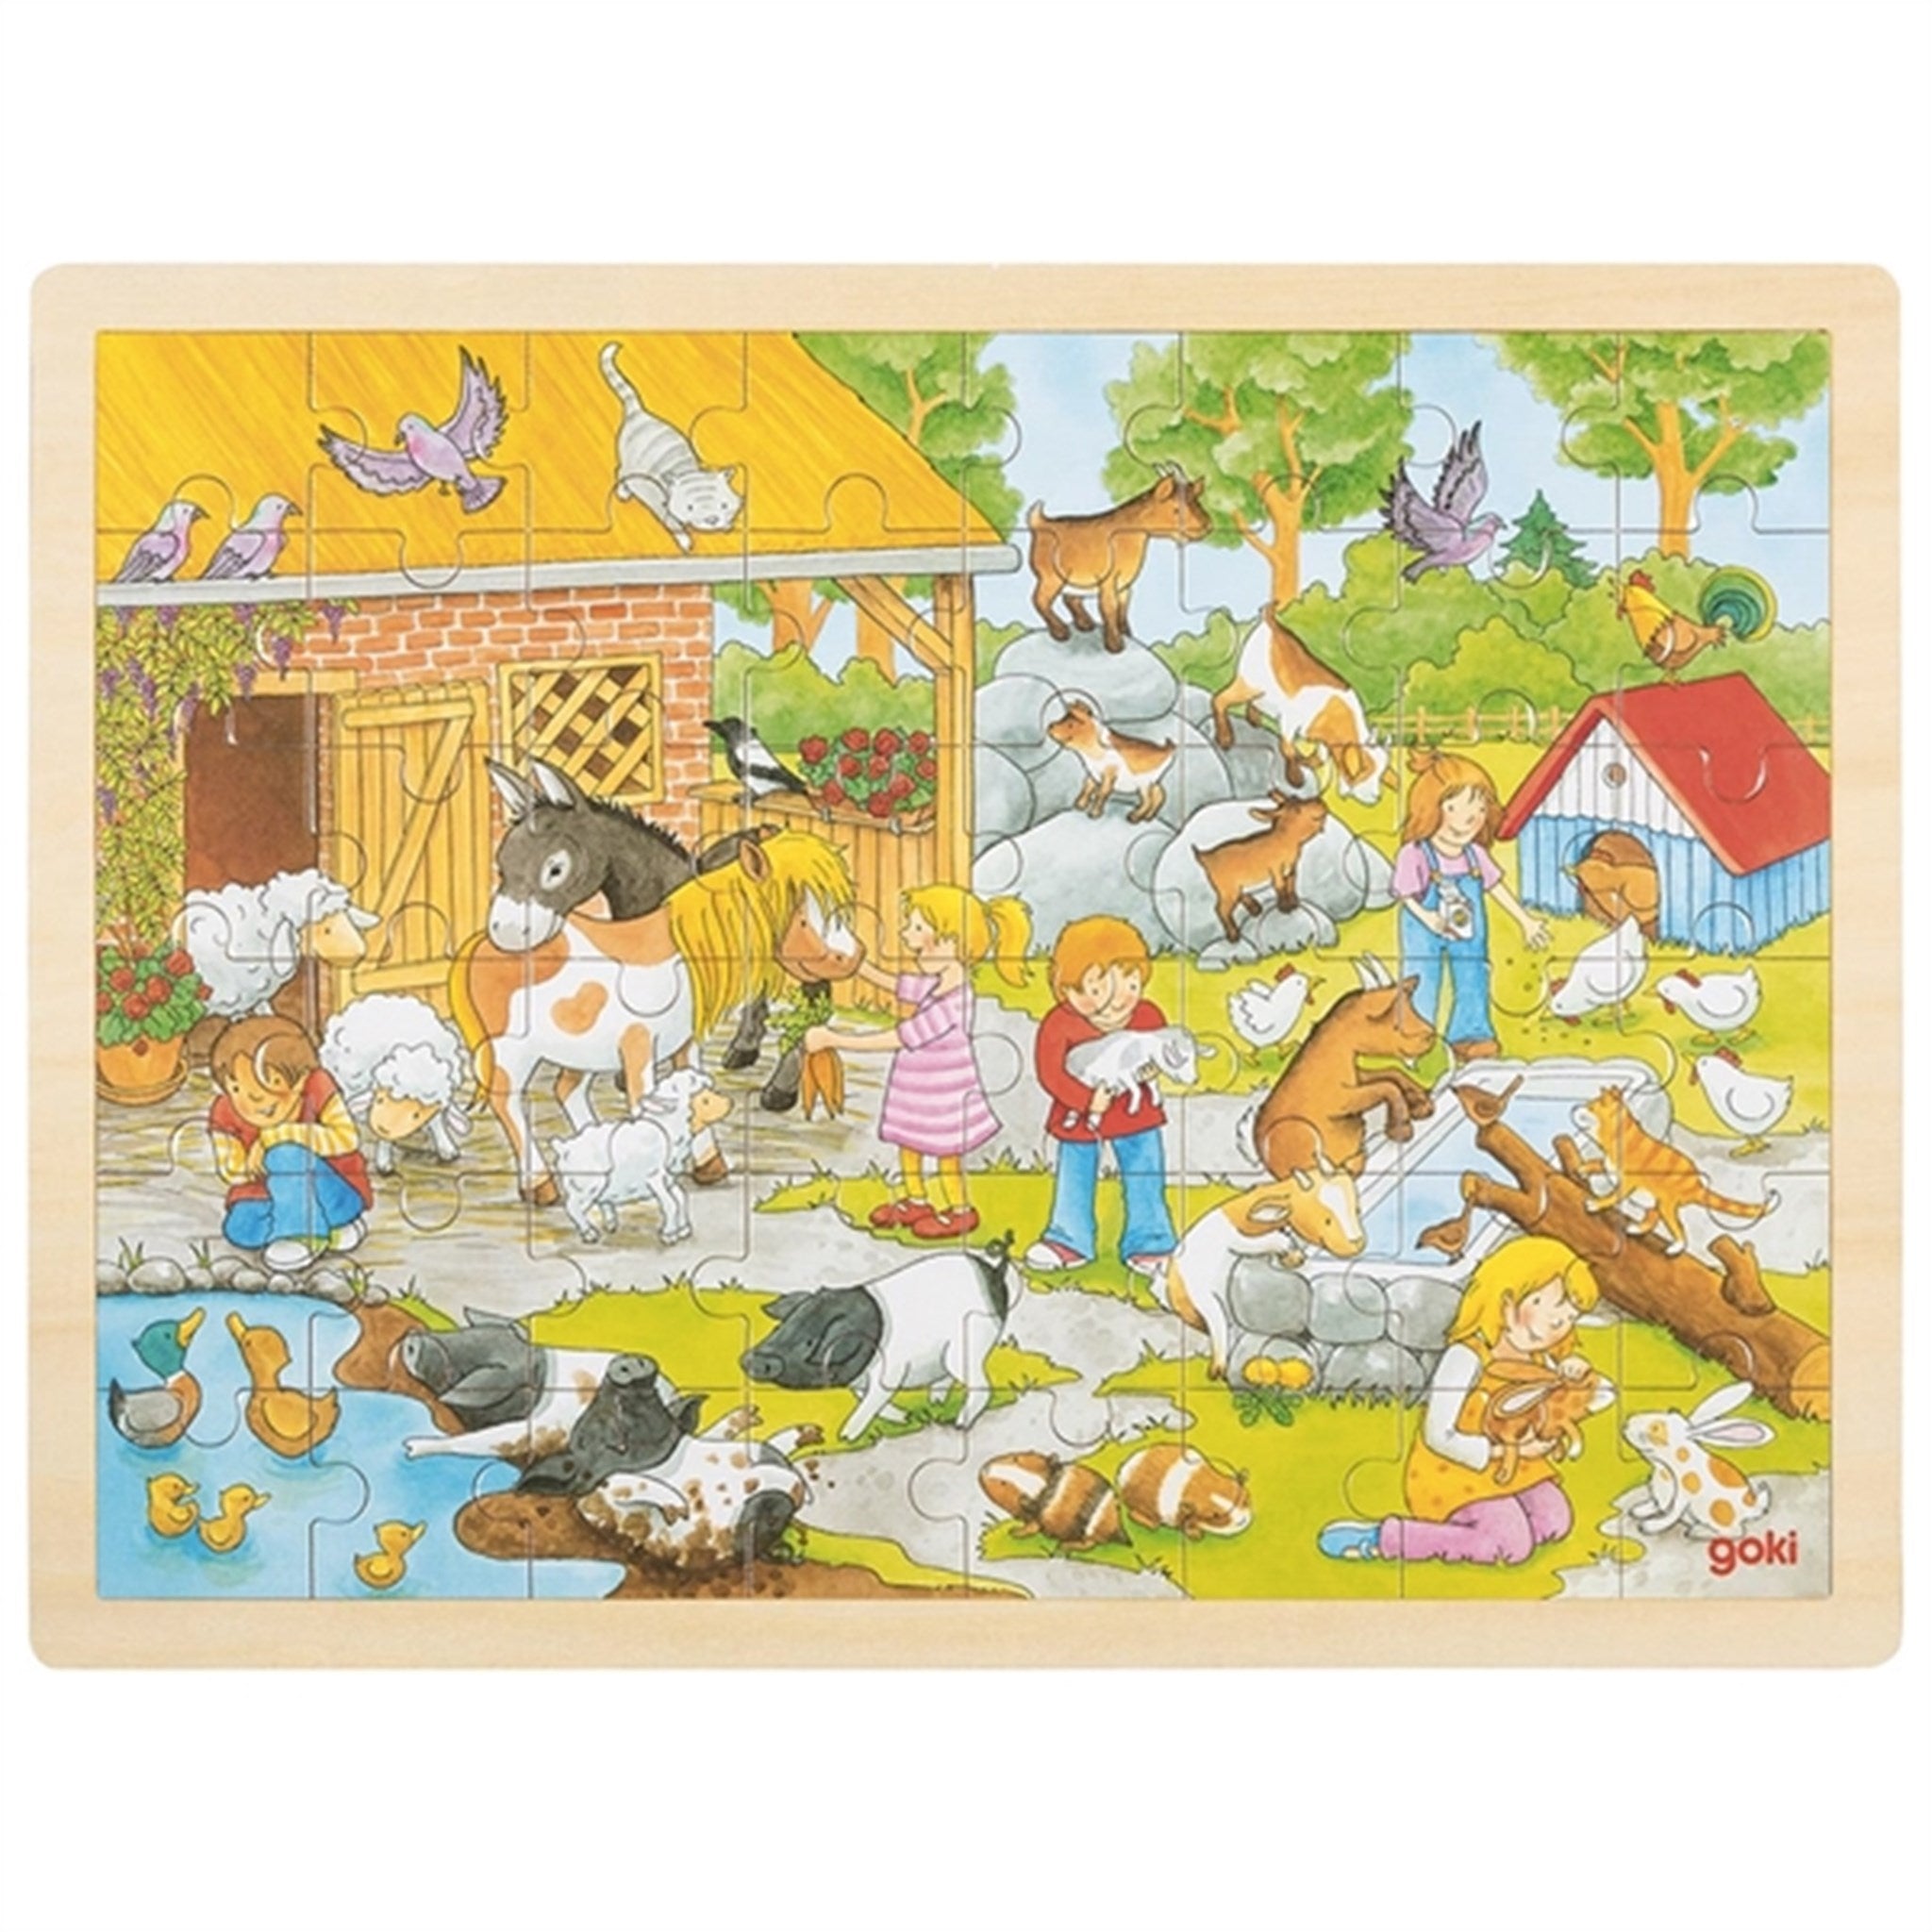 Goki Puzzle - Farm Animals